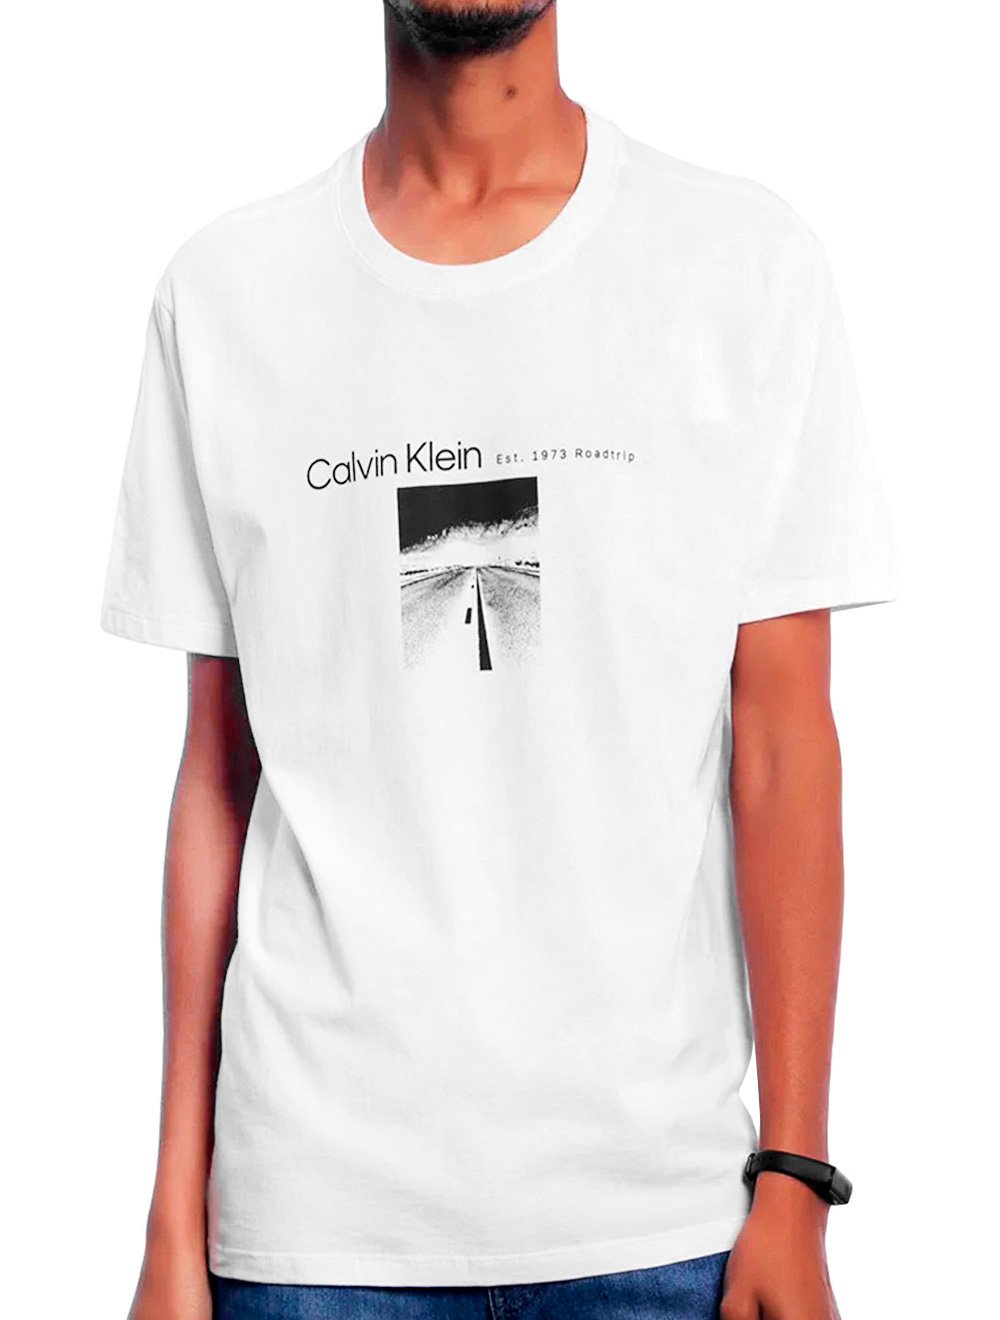 Camiseta Calvin Klein Masculina Est. 1973 Roadtrip Branca